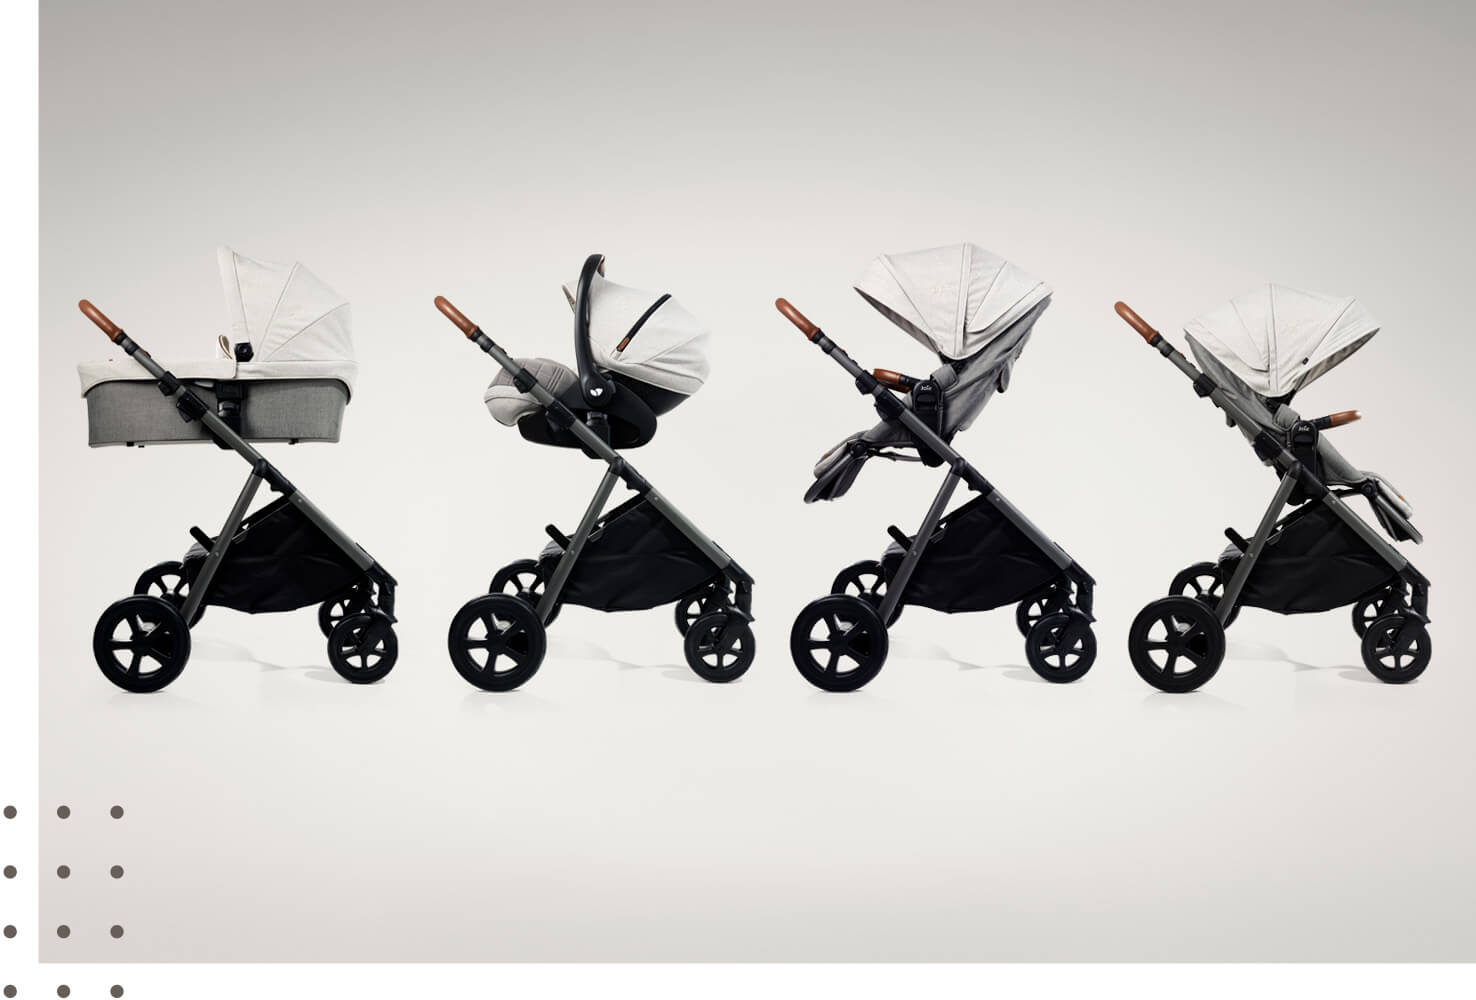 Mannequin déplaçant le landau Joie aeria, coloris gris clair, dans ses quatre modes : nacelle, porte-bébé, siège face aux parents et siège face à la route.